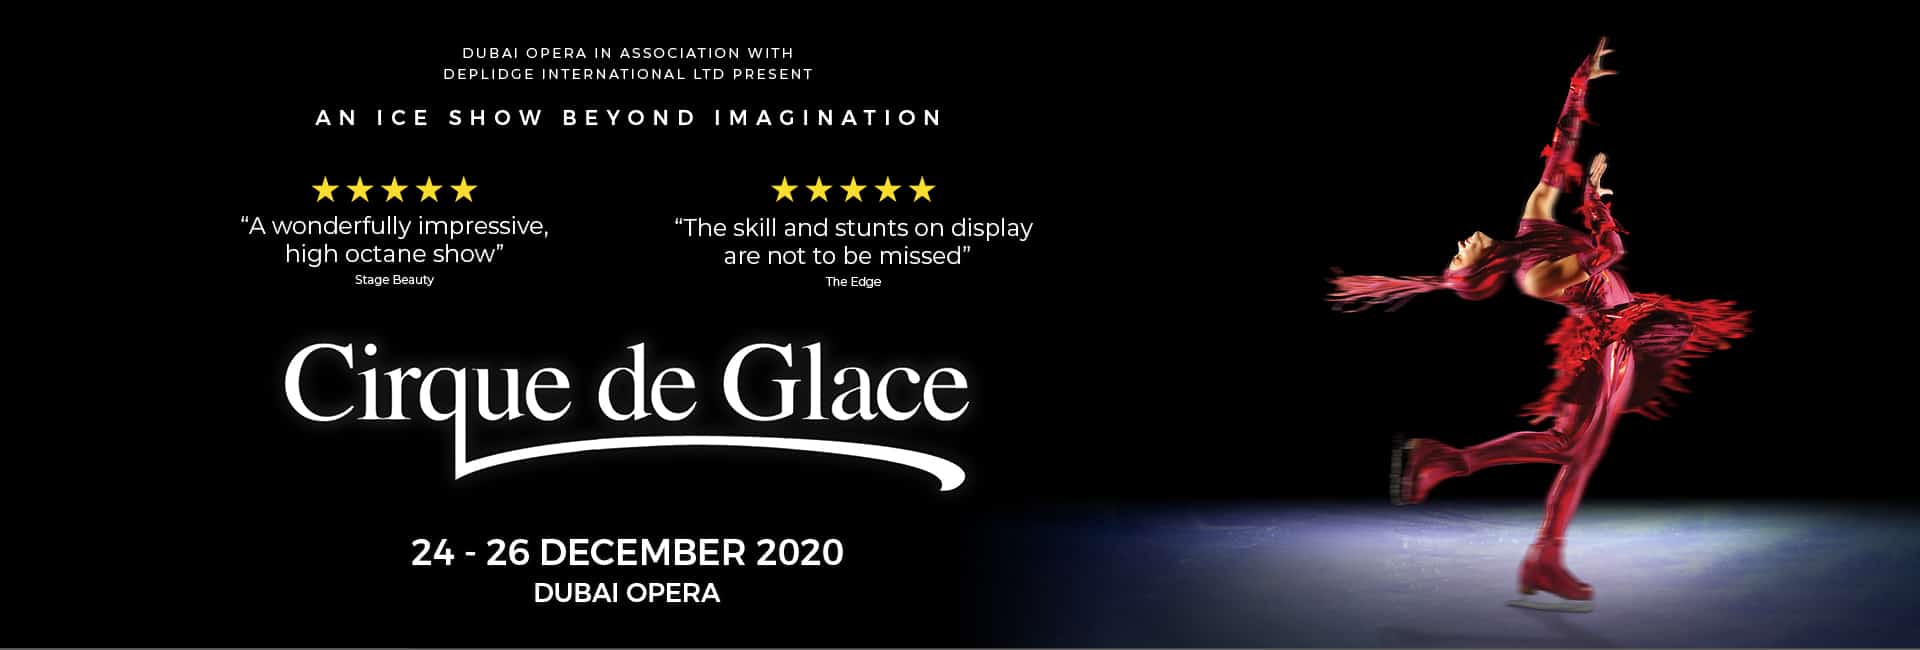 Cirque de Glace - Coming Soon in UAE